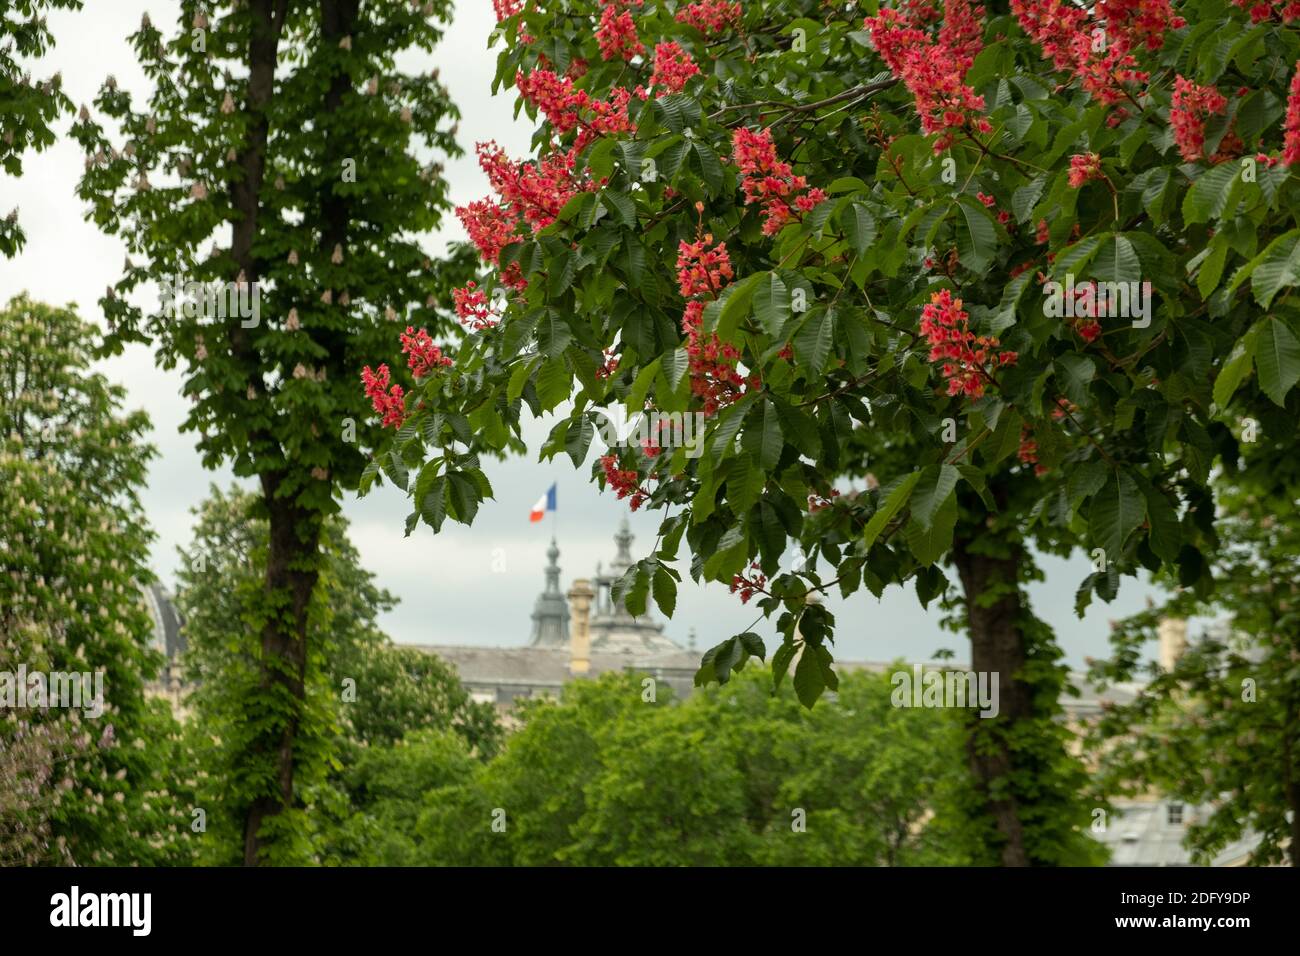 Vislumbra la bandera del ricolor en la parte superior del Grand Palais de París. Tomado a través de los árboles de flores de primavera Foto de stock